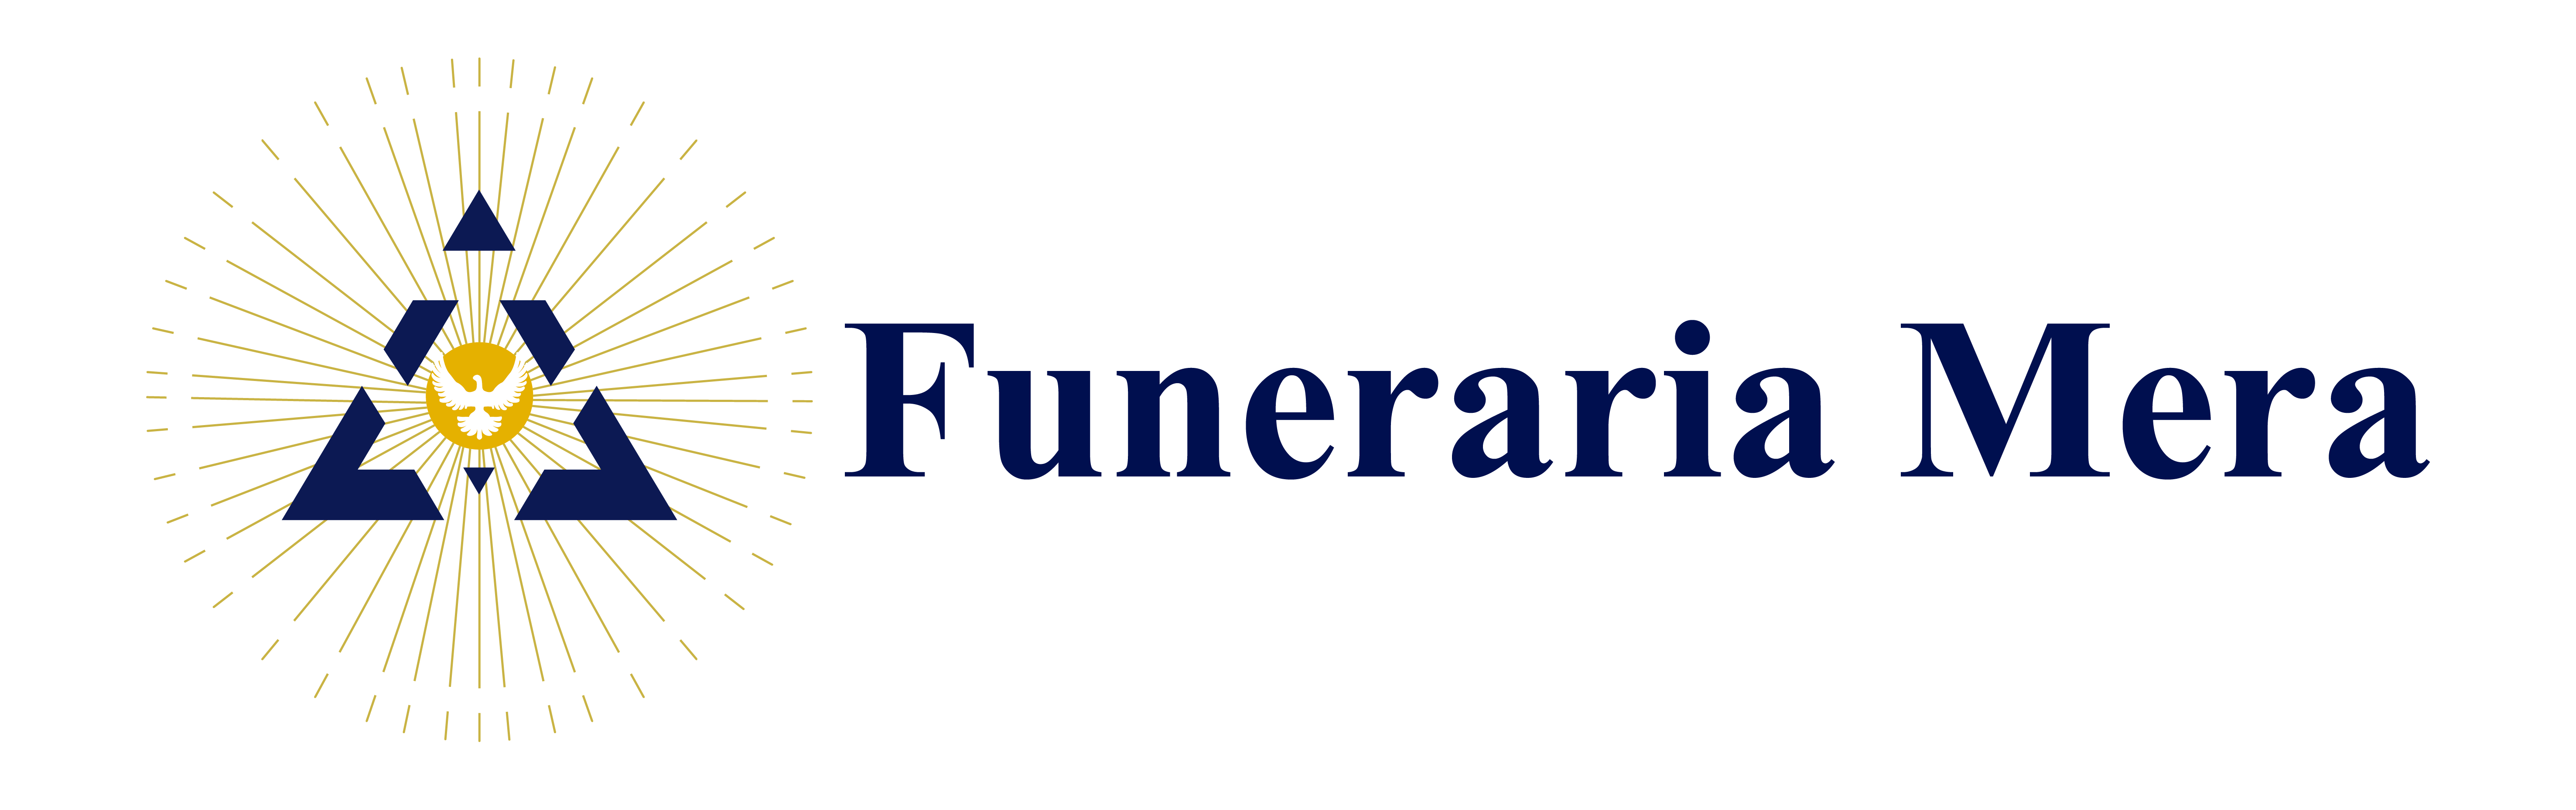 Funeraria Mera